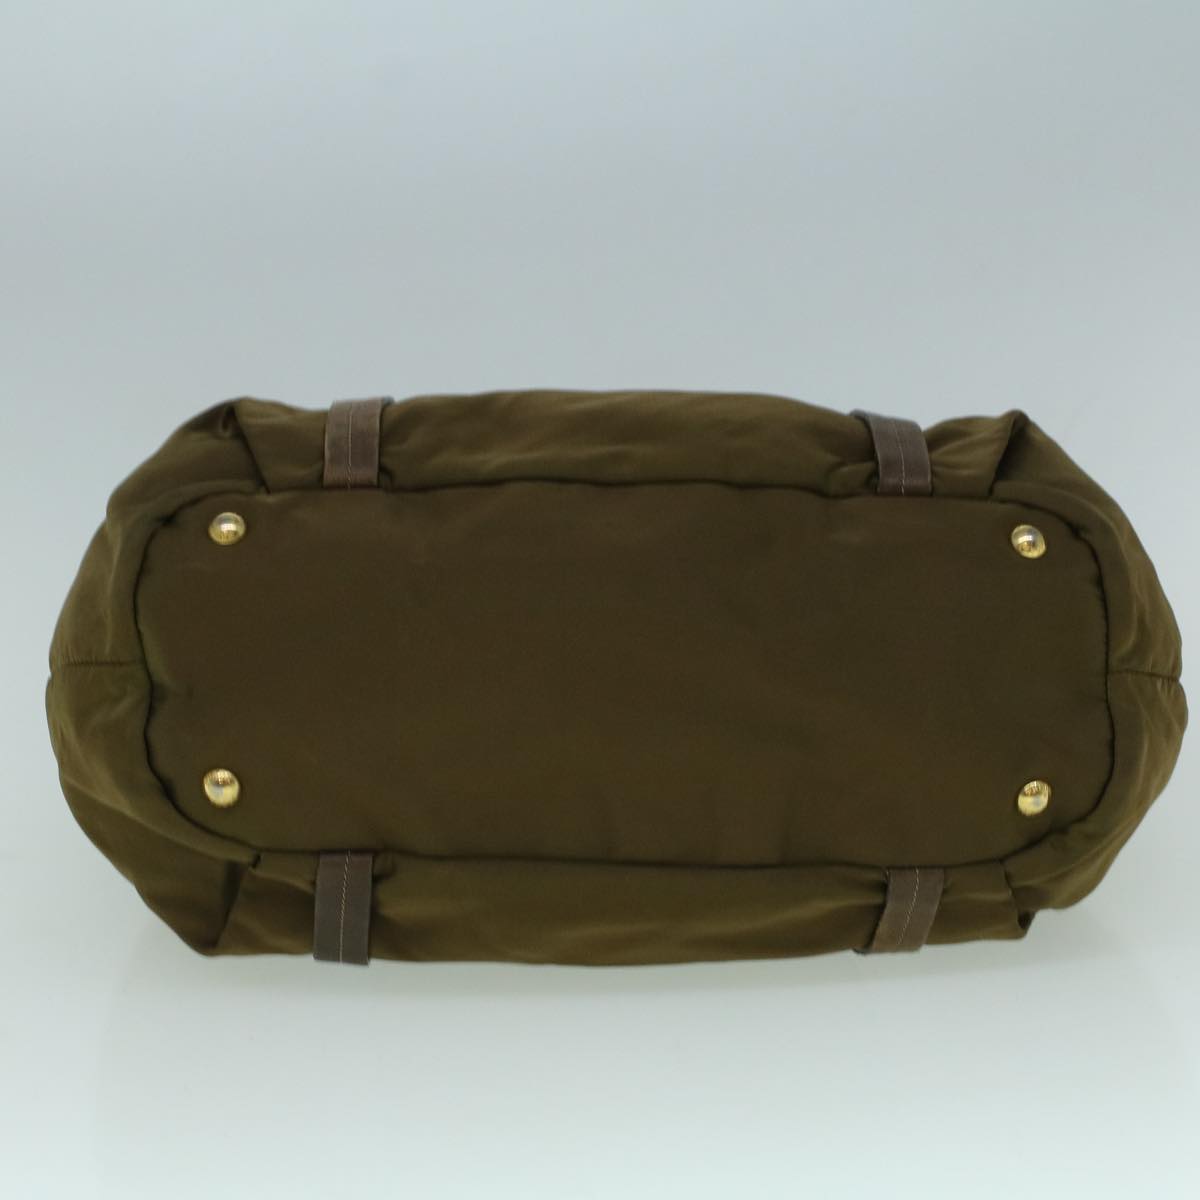 PRADA Tote Bag Nylon 2way Brown Auth 60399